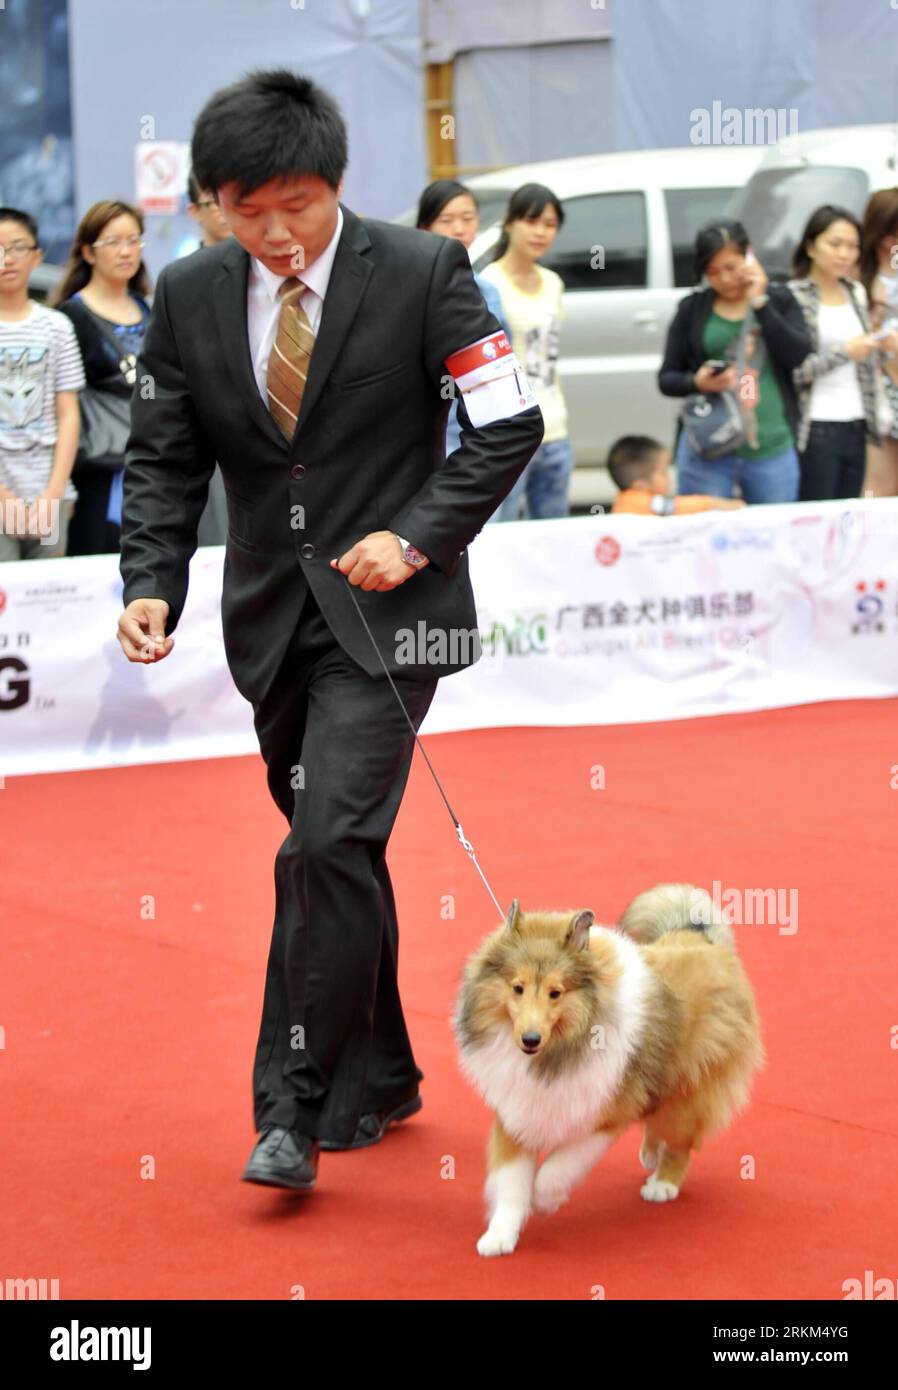 Bildnummer : 56516599 Datum : 27.11.2011 Copyright : imago/Xinhua (111127) -- NANNING, 27 novembre 2011 (Xinhua) -- Un chien se produit lors du 126e-127e AKC Global Services-NGKC (Guangxi) Champion Show à Nanning, capitale de la région autonome de Guangxi Zhuang du sud de la Chine, le 27 novembre 2011. Au total, 138 chiens de différentes races de toute la Chine, y compris Hong Kong, Macao et Taiwan, participent au 126e-127e salon des champions AKC Global Services-NGKC (Guangxi) à Nanning. Le spectacle est un événement de haut niveau visant à évaluer les chiens conformément aux normes de race de l'American Kennel Club (AKC). (Xi Banque D'Images